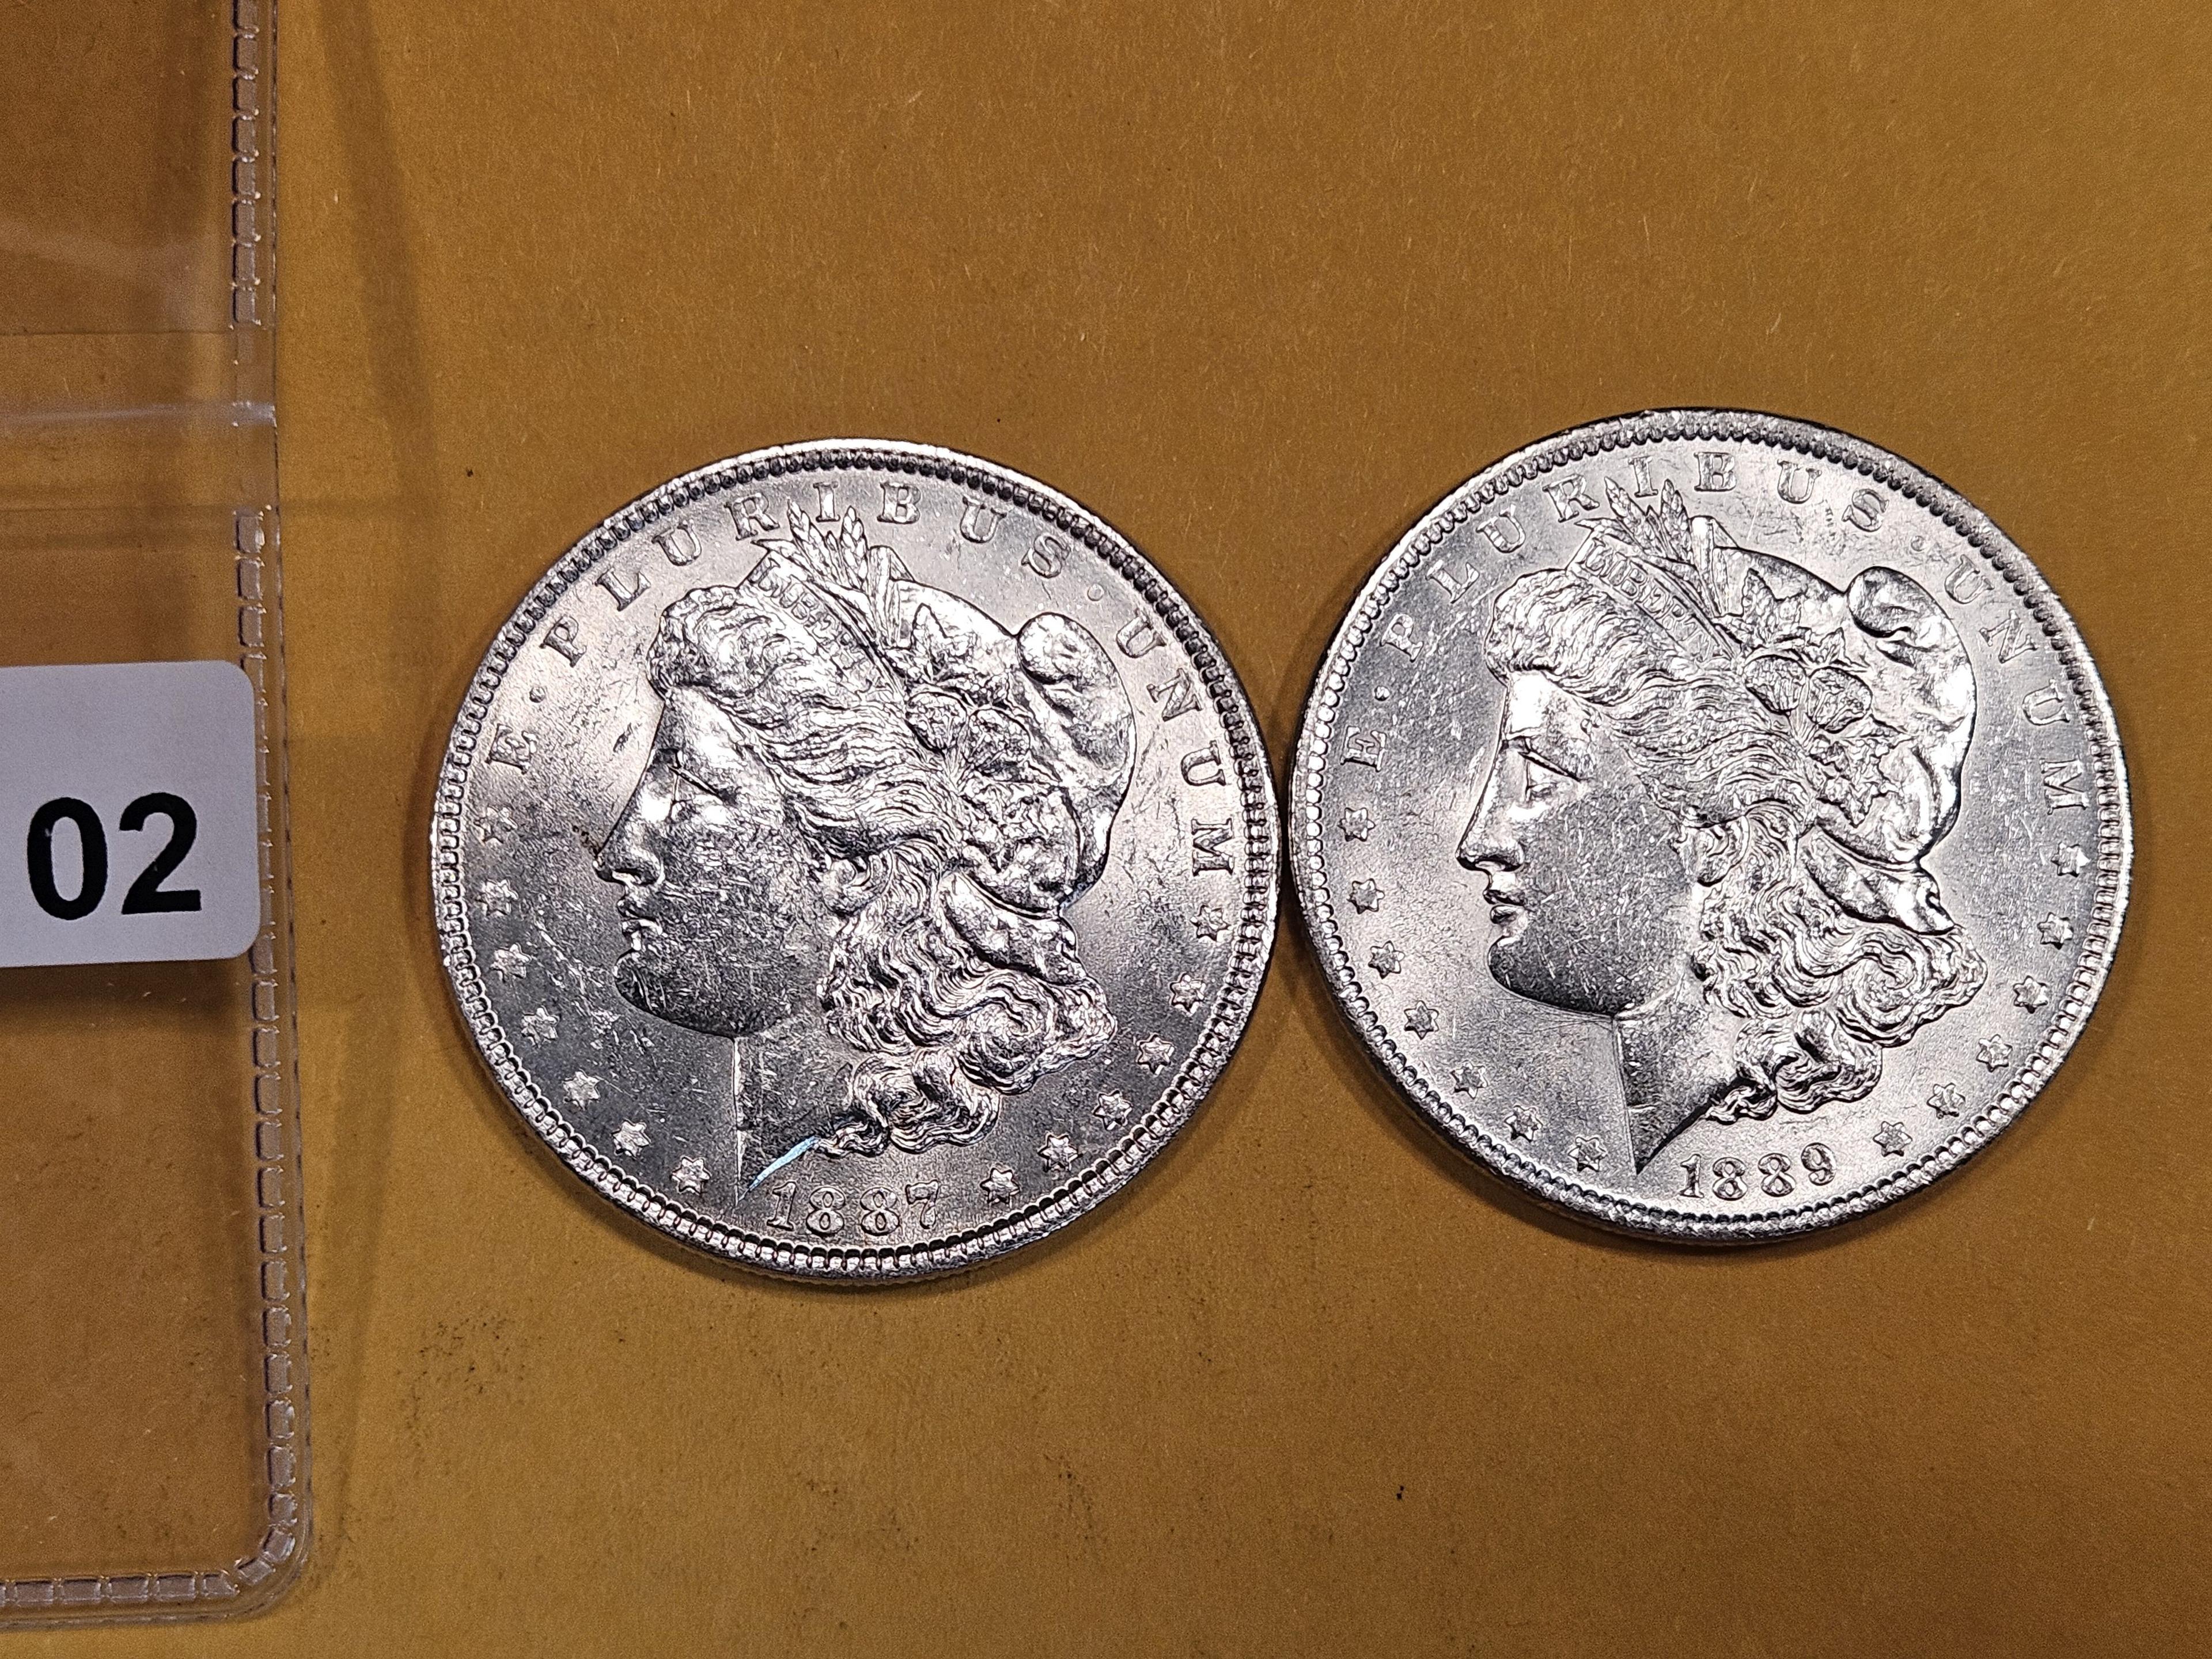 1887 and 1889 Morgan Dollars